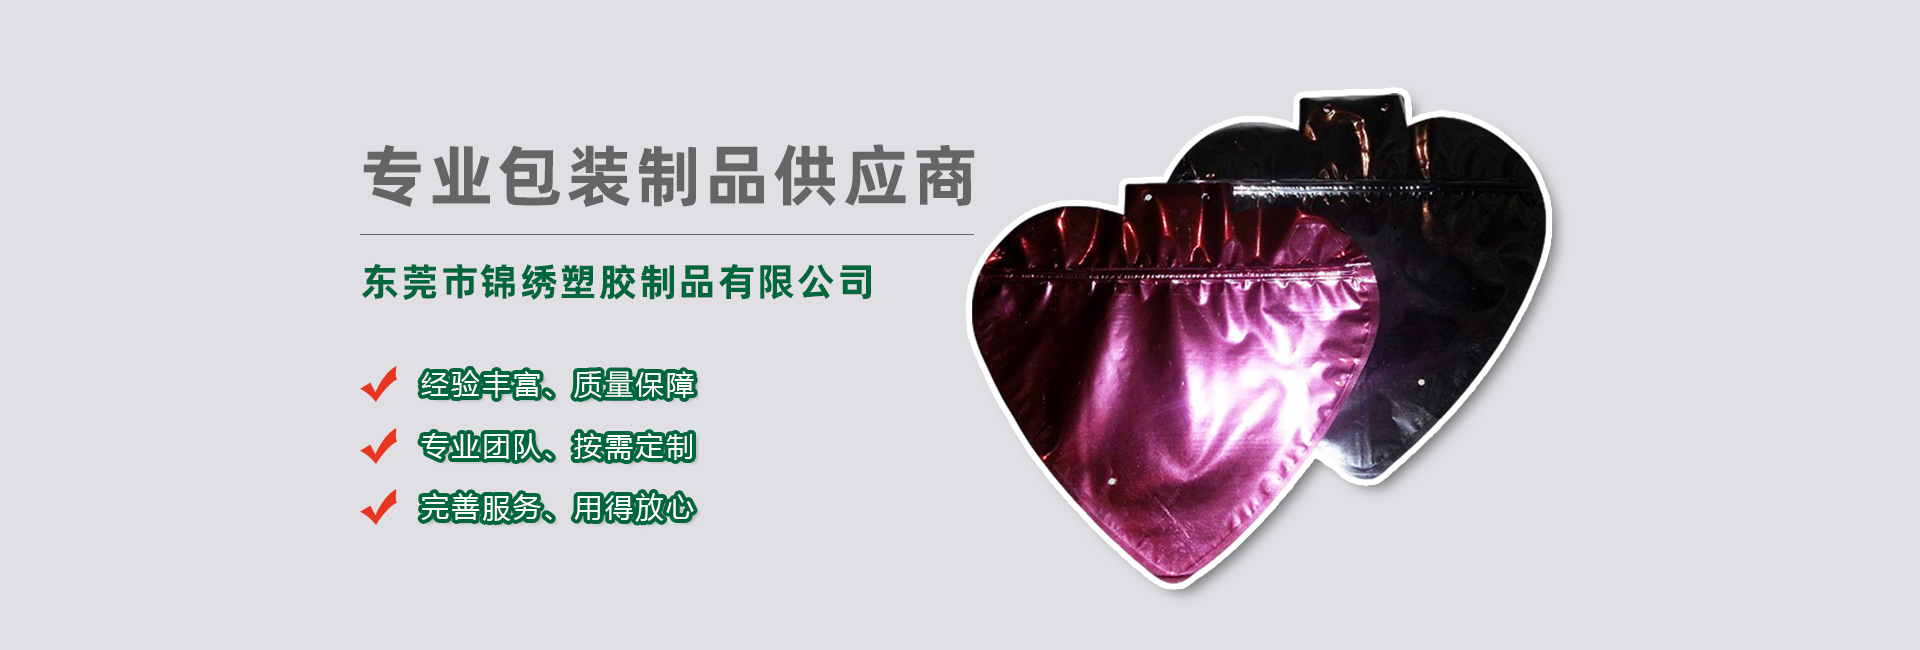 江苏食品袋banner